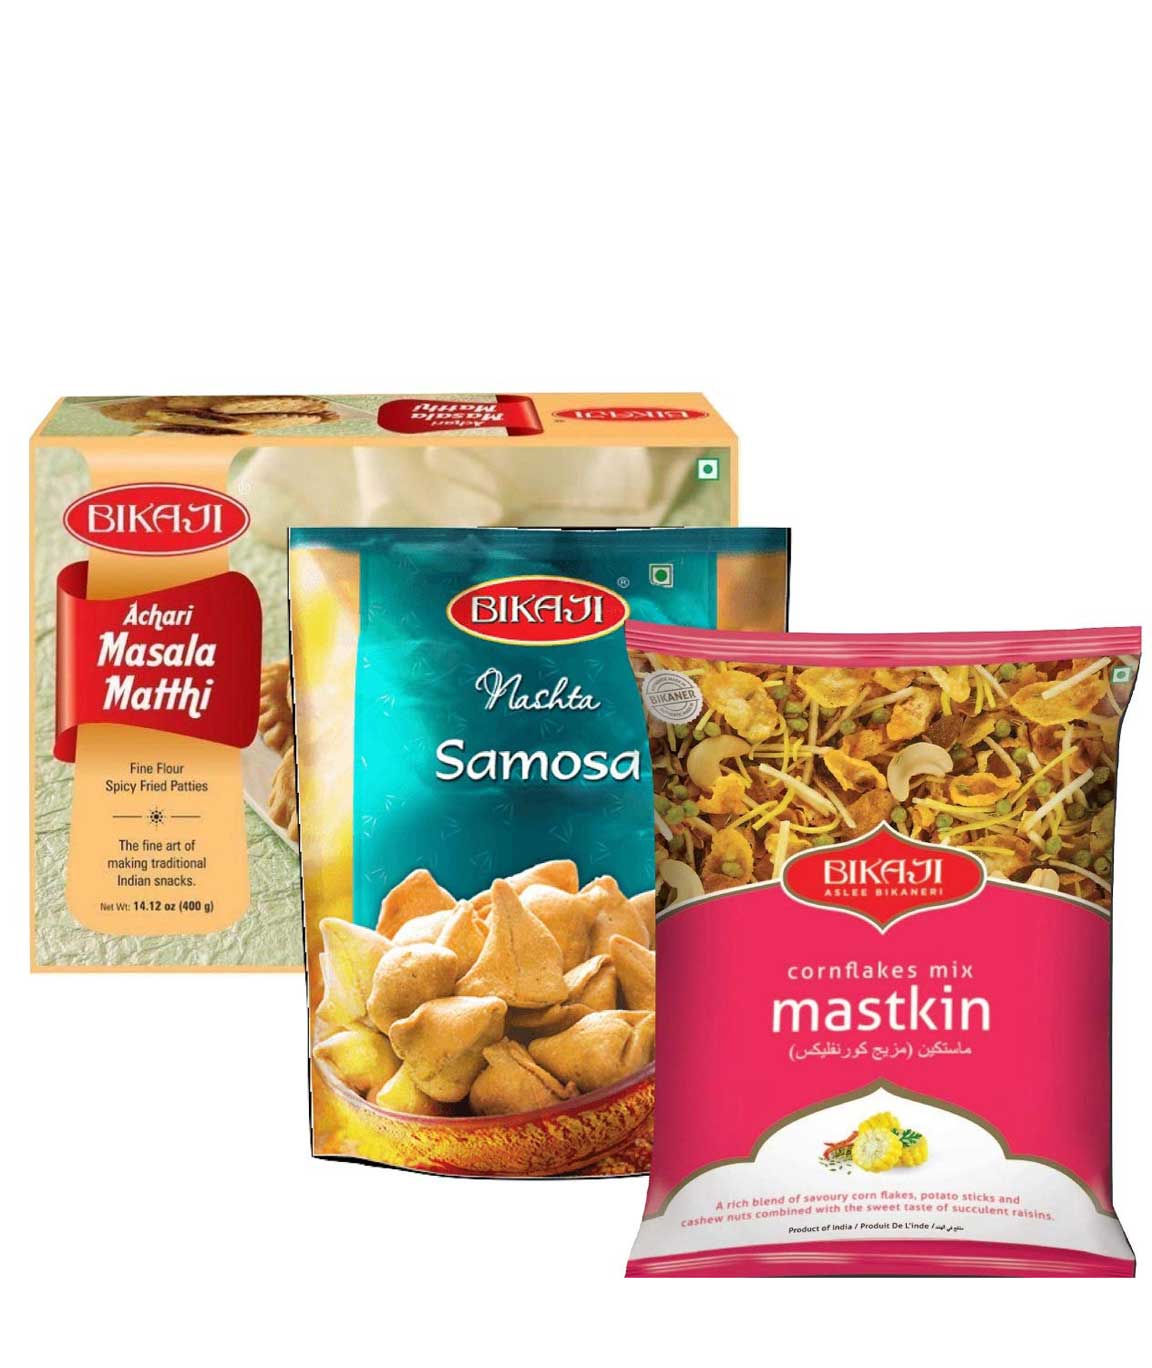 Bikaji Combo Pack - Achari Masala Matthi 400g - Nashta Samosa 200g - Cornflakes Mix 350g - Pack of 3